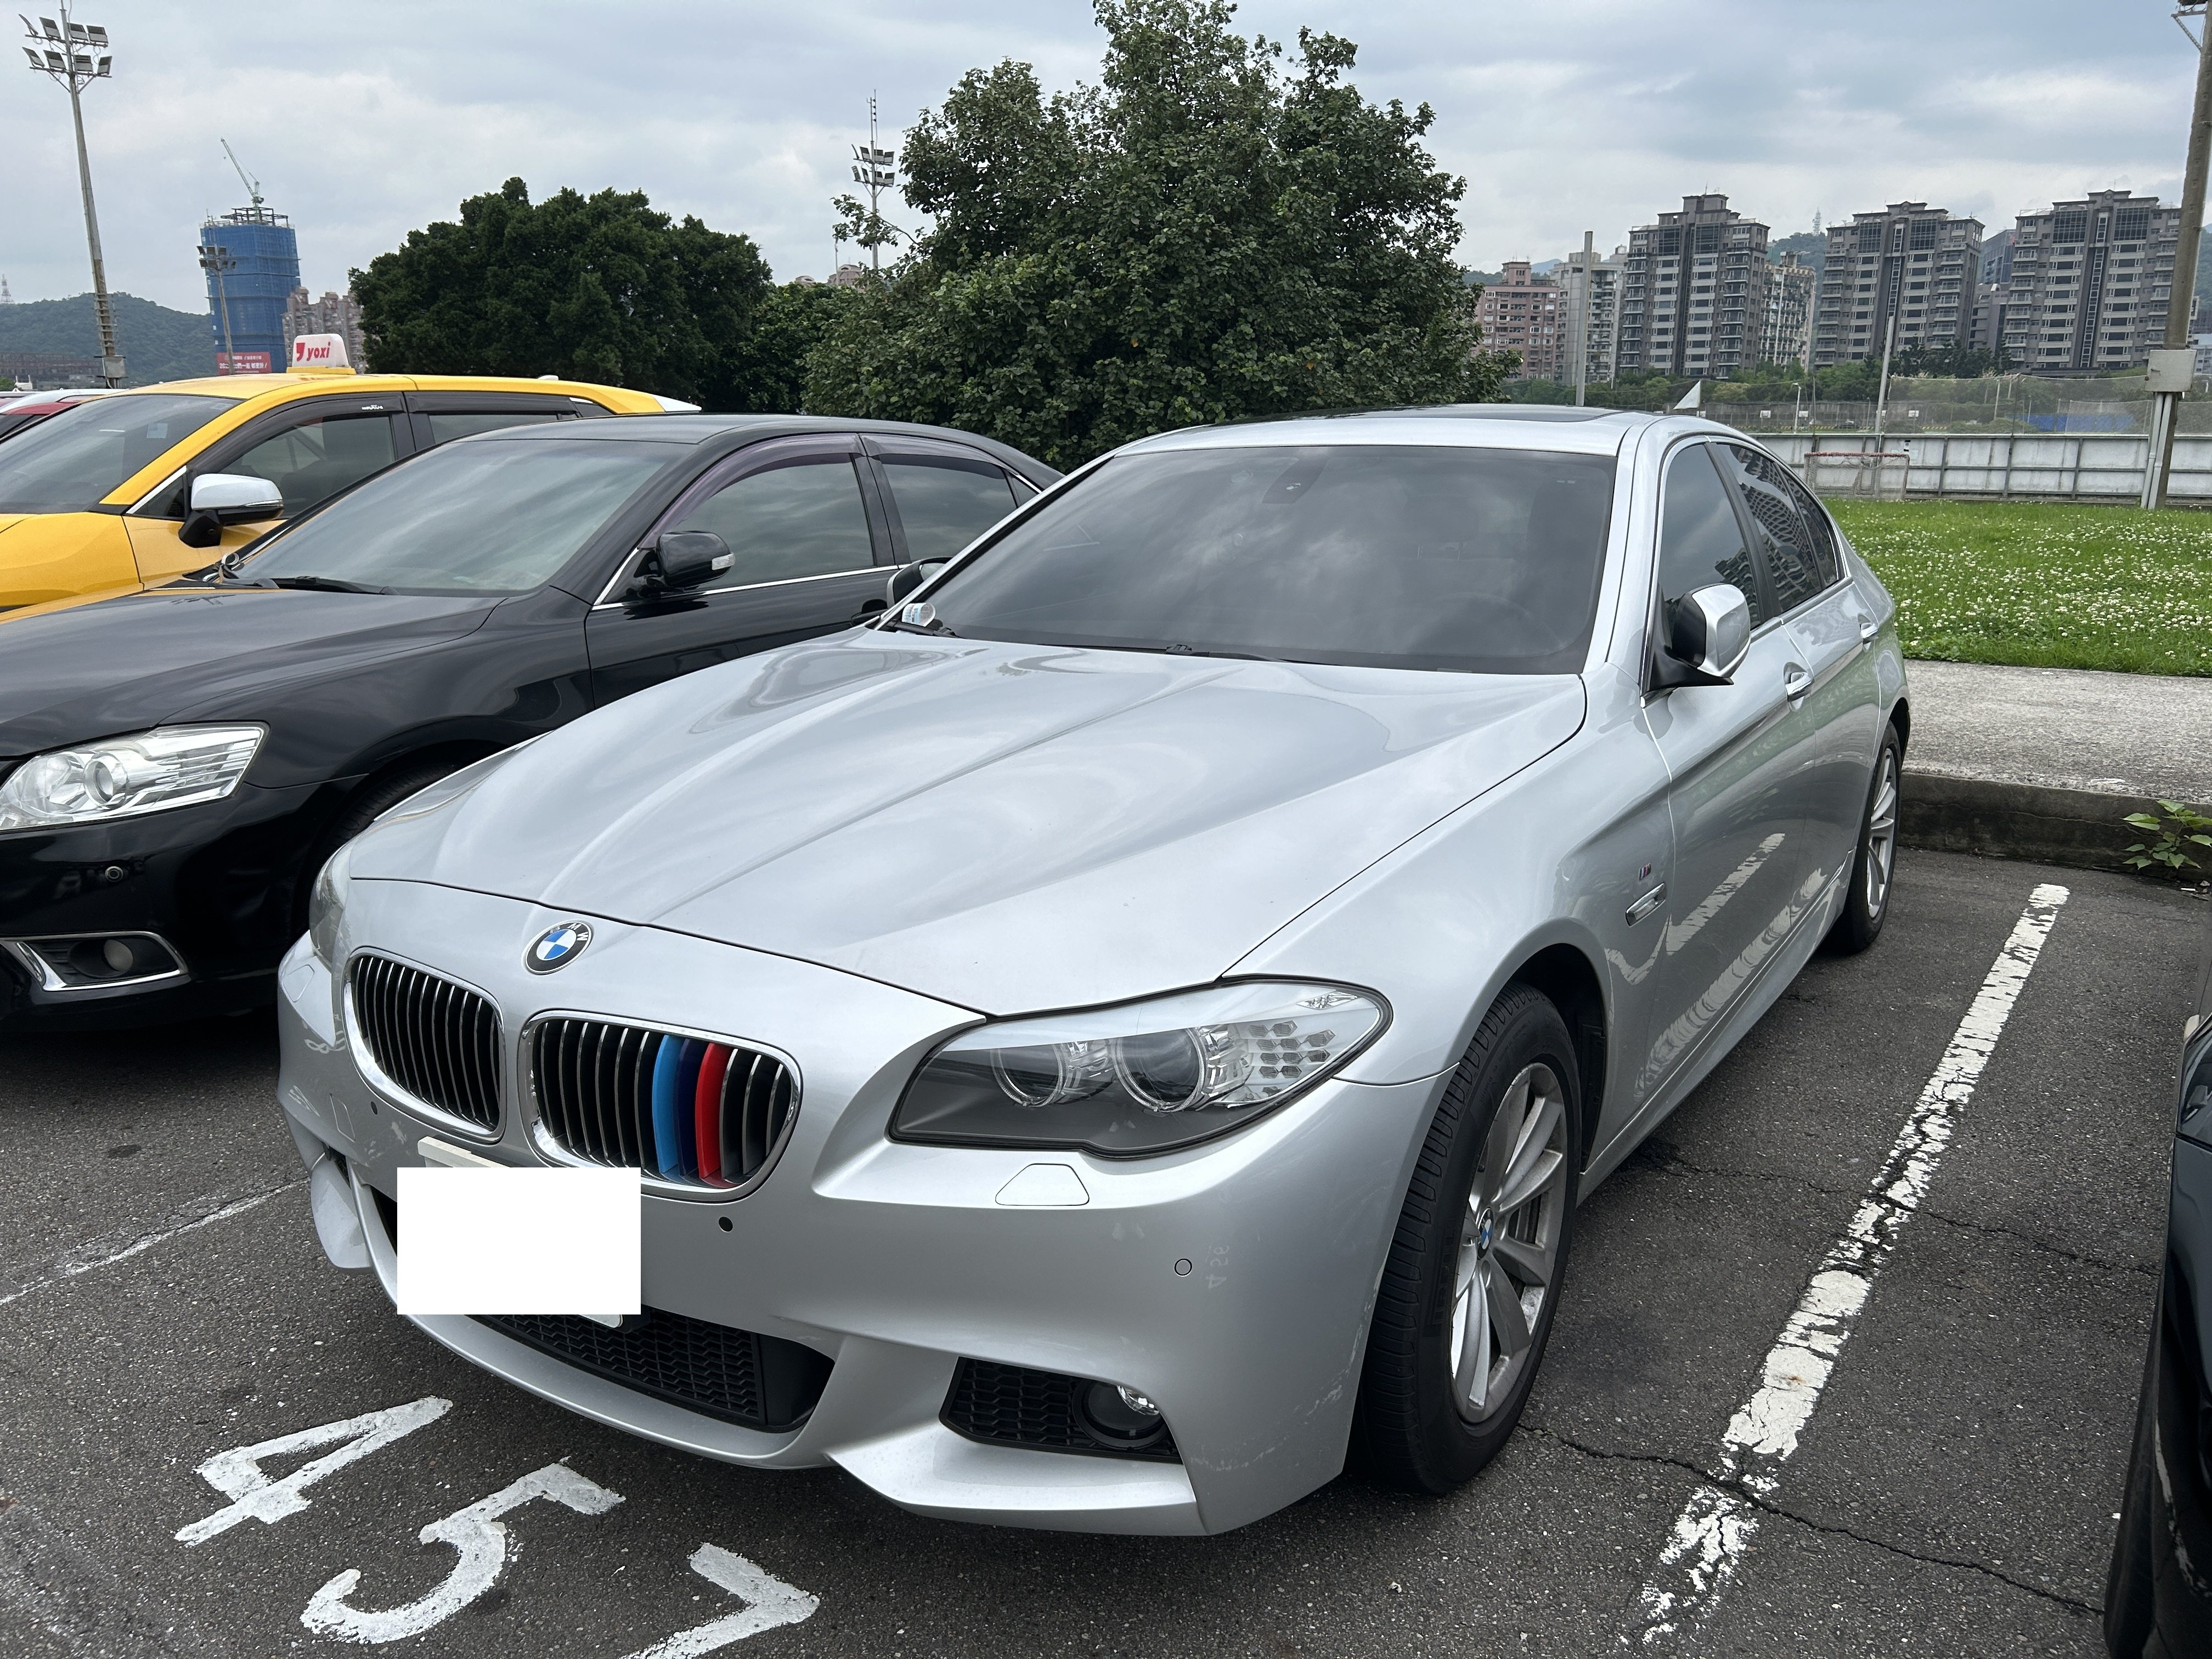 2014 BMW 寶馬 5-series sedan